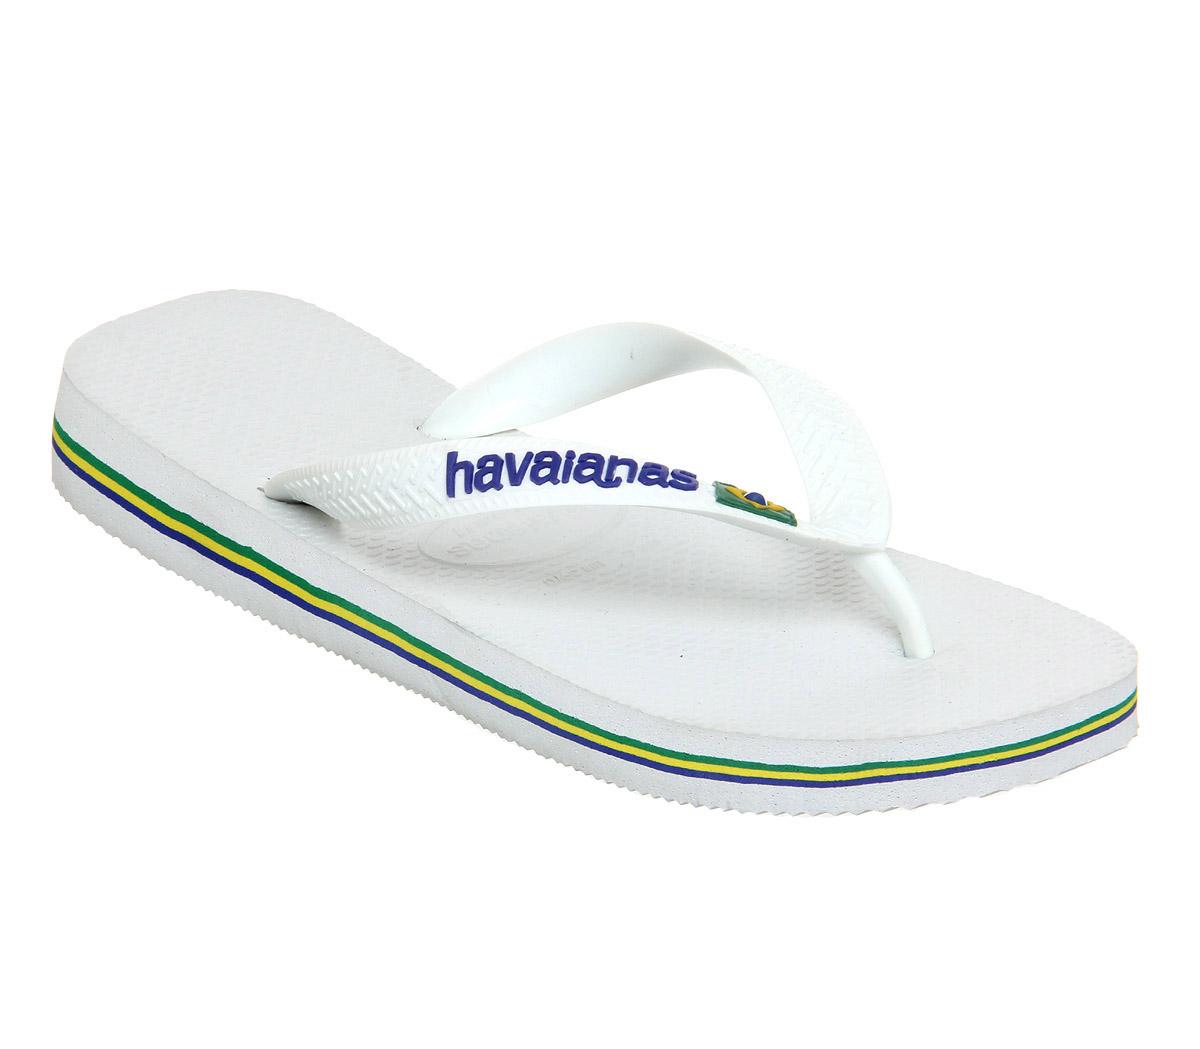 havaianas shoes brazil